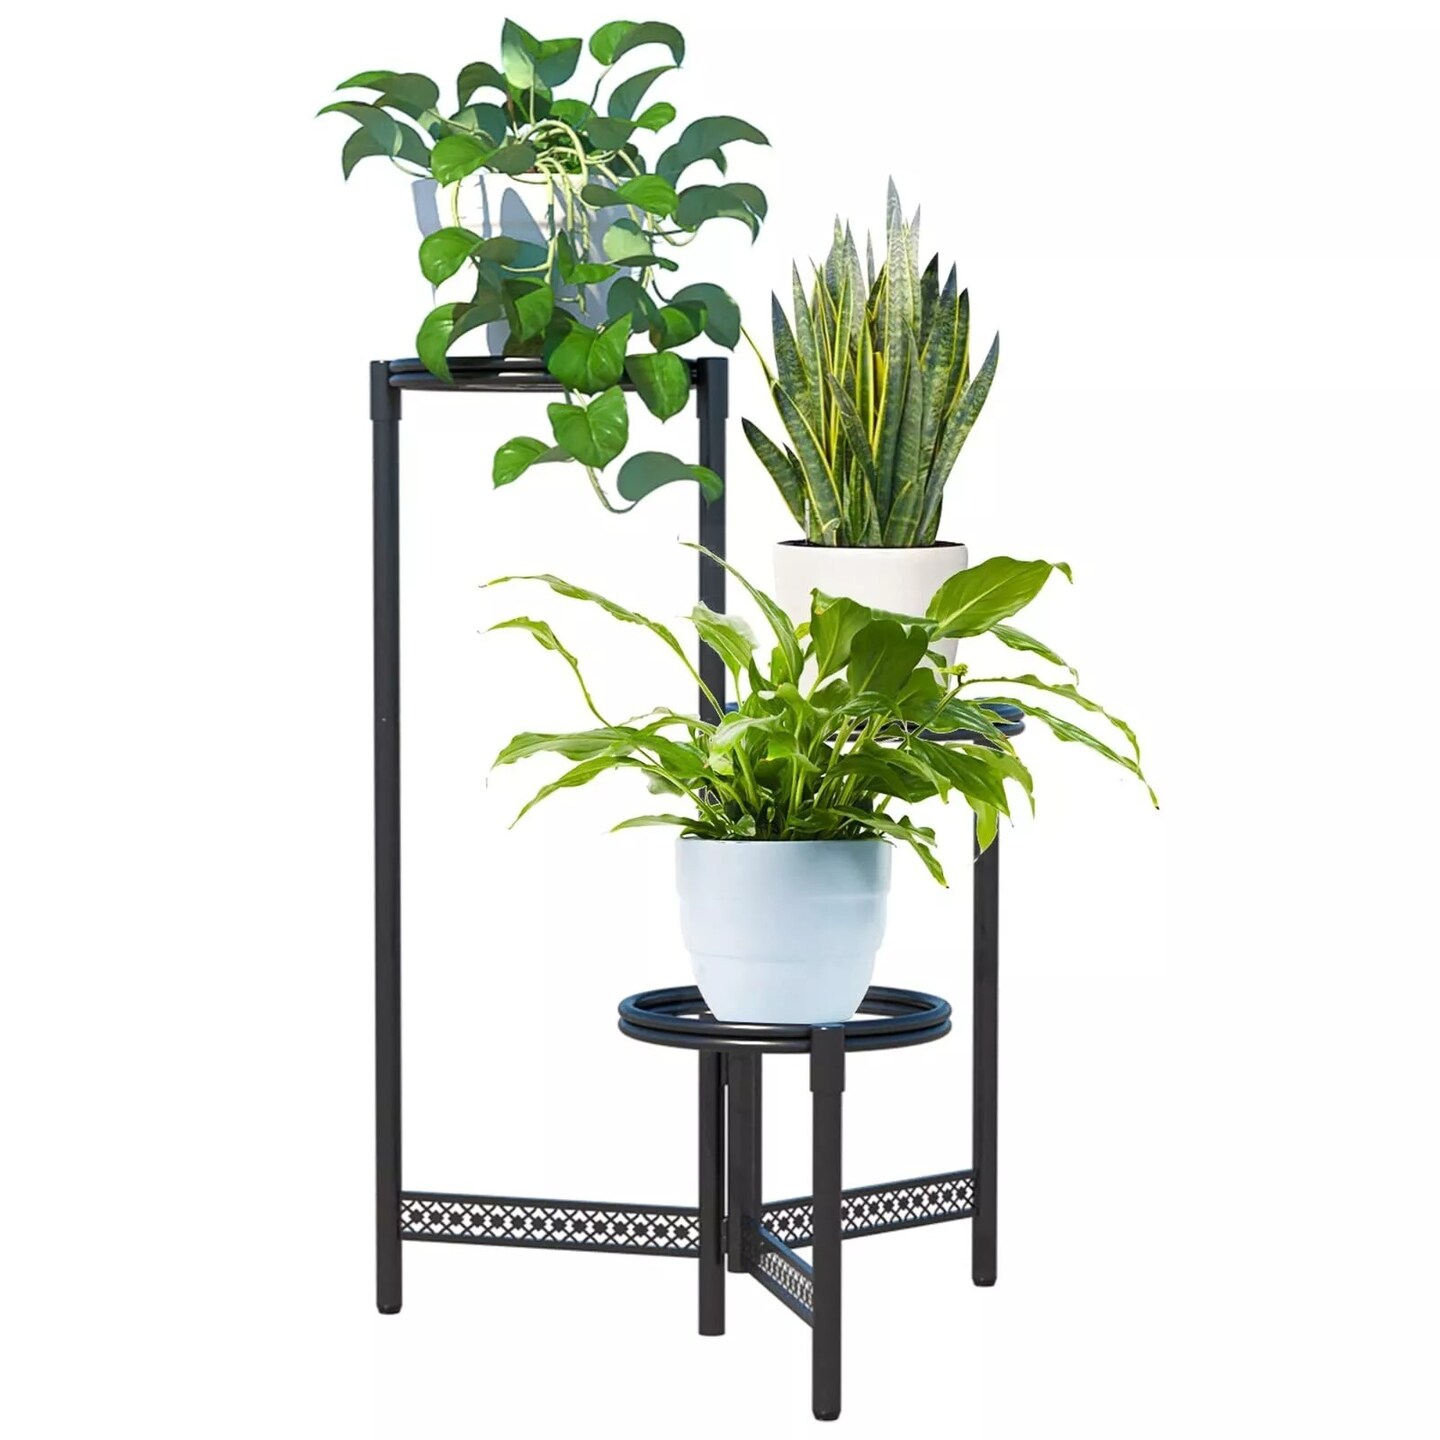 3 Tier Metal Plant Stand Shelf for Indoor Outdoor Plants Multiple